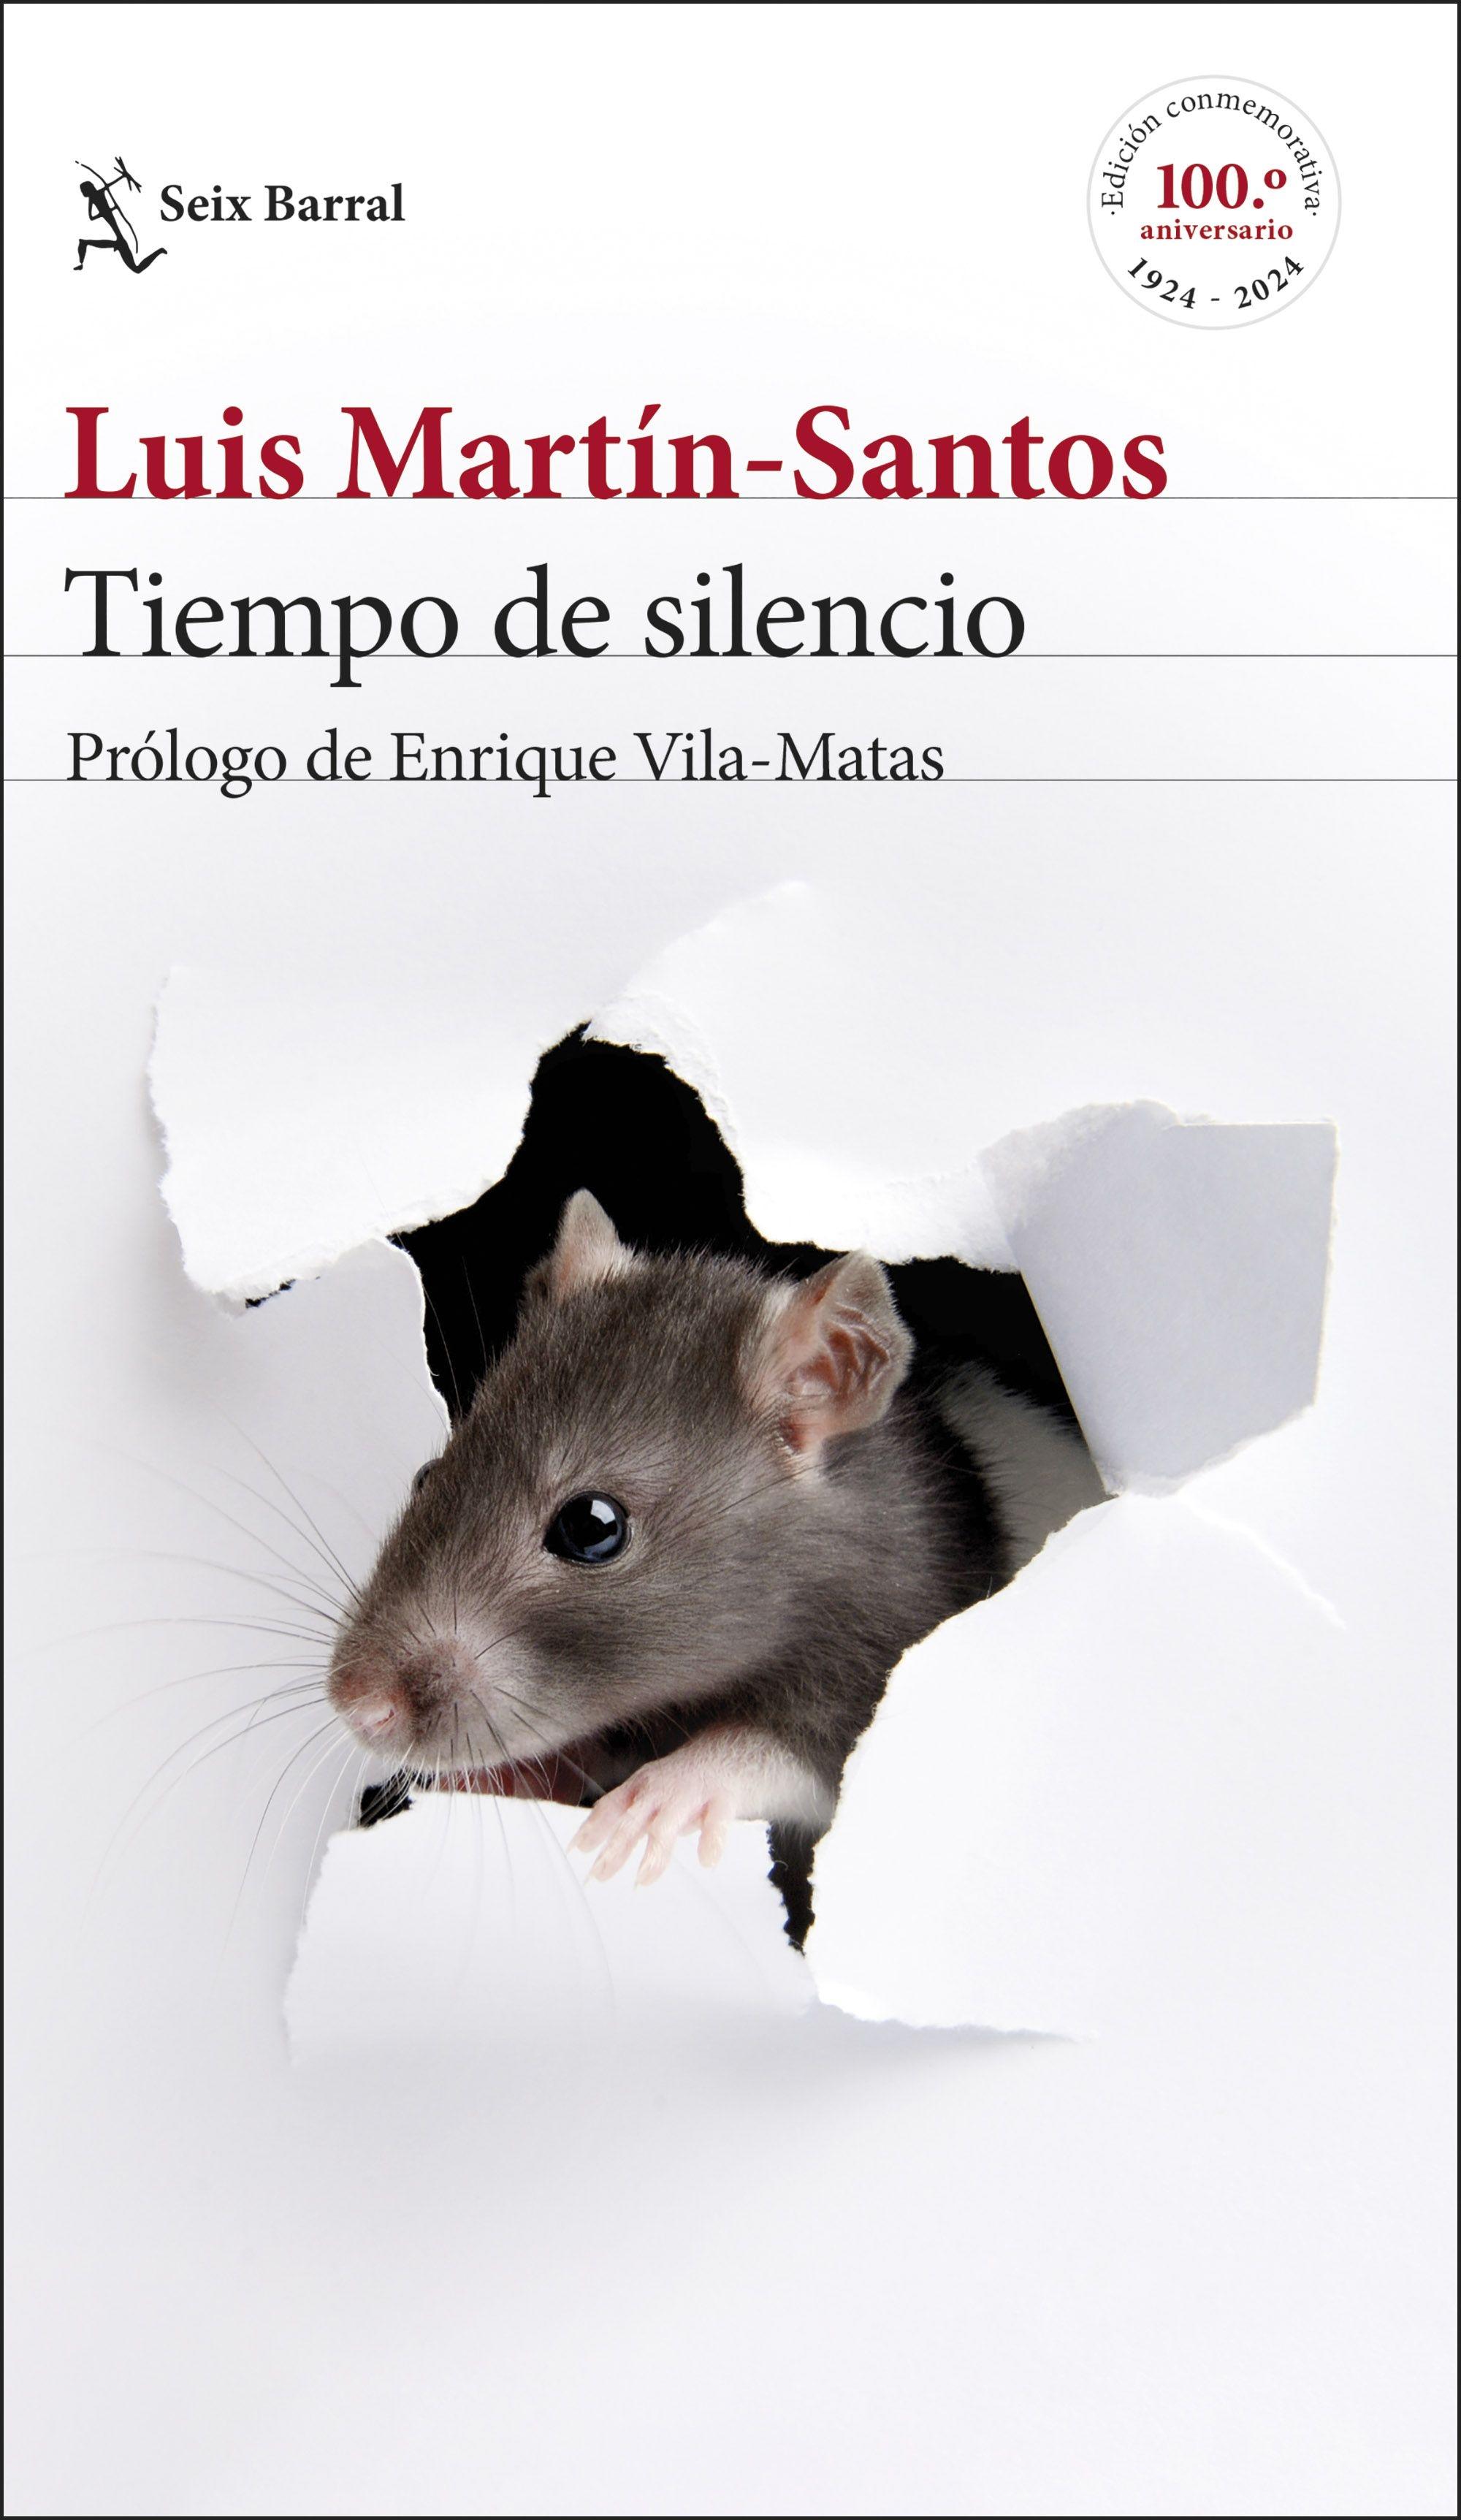 Tiempo de Silencio "Prólogo de Enrique Vila-Matas"